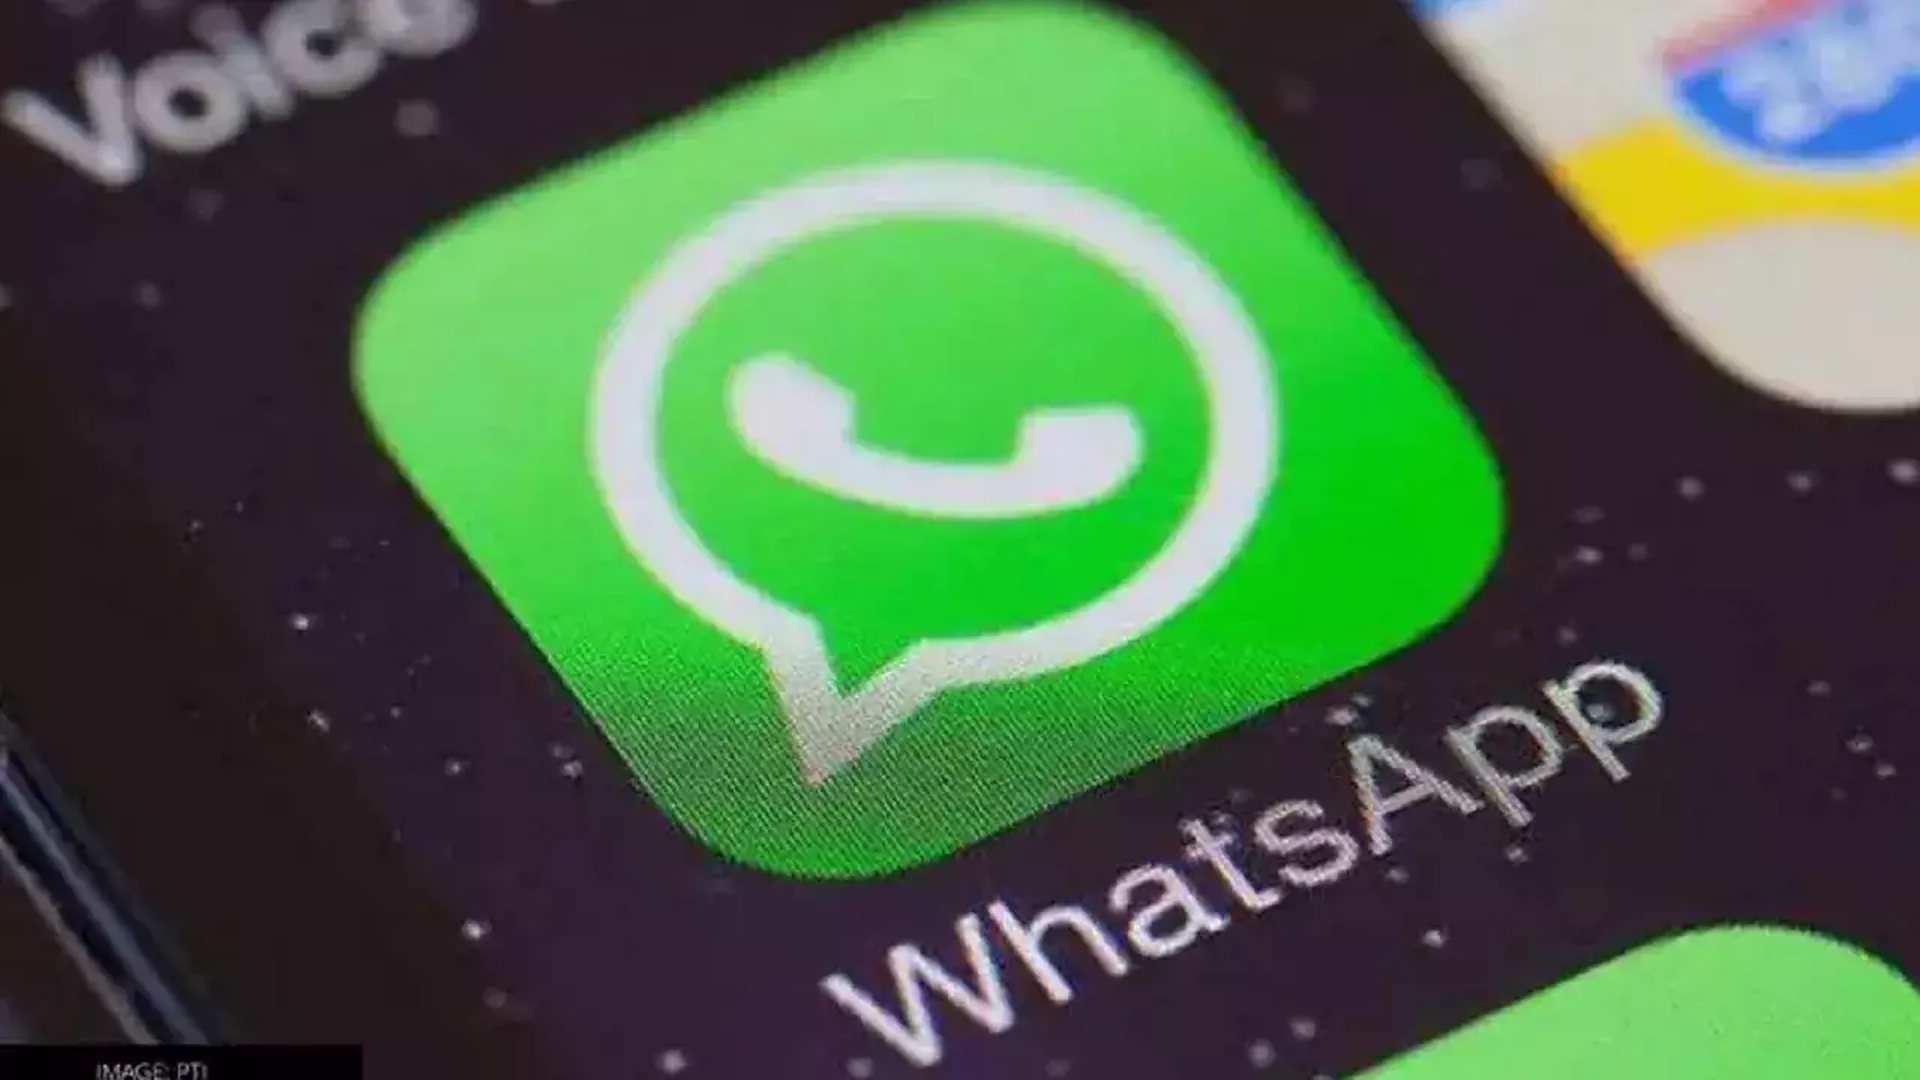 Ujawniono listę niedziałających urządzeń mobilnych Whatsapp i zgodnie z nią od tego tygodnia niektóre urządzenia z systemem Android i iPhone nie będą już obsługiwać WhatsApp....